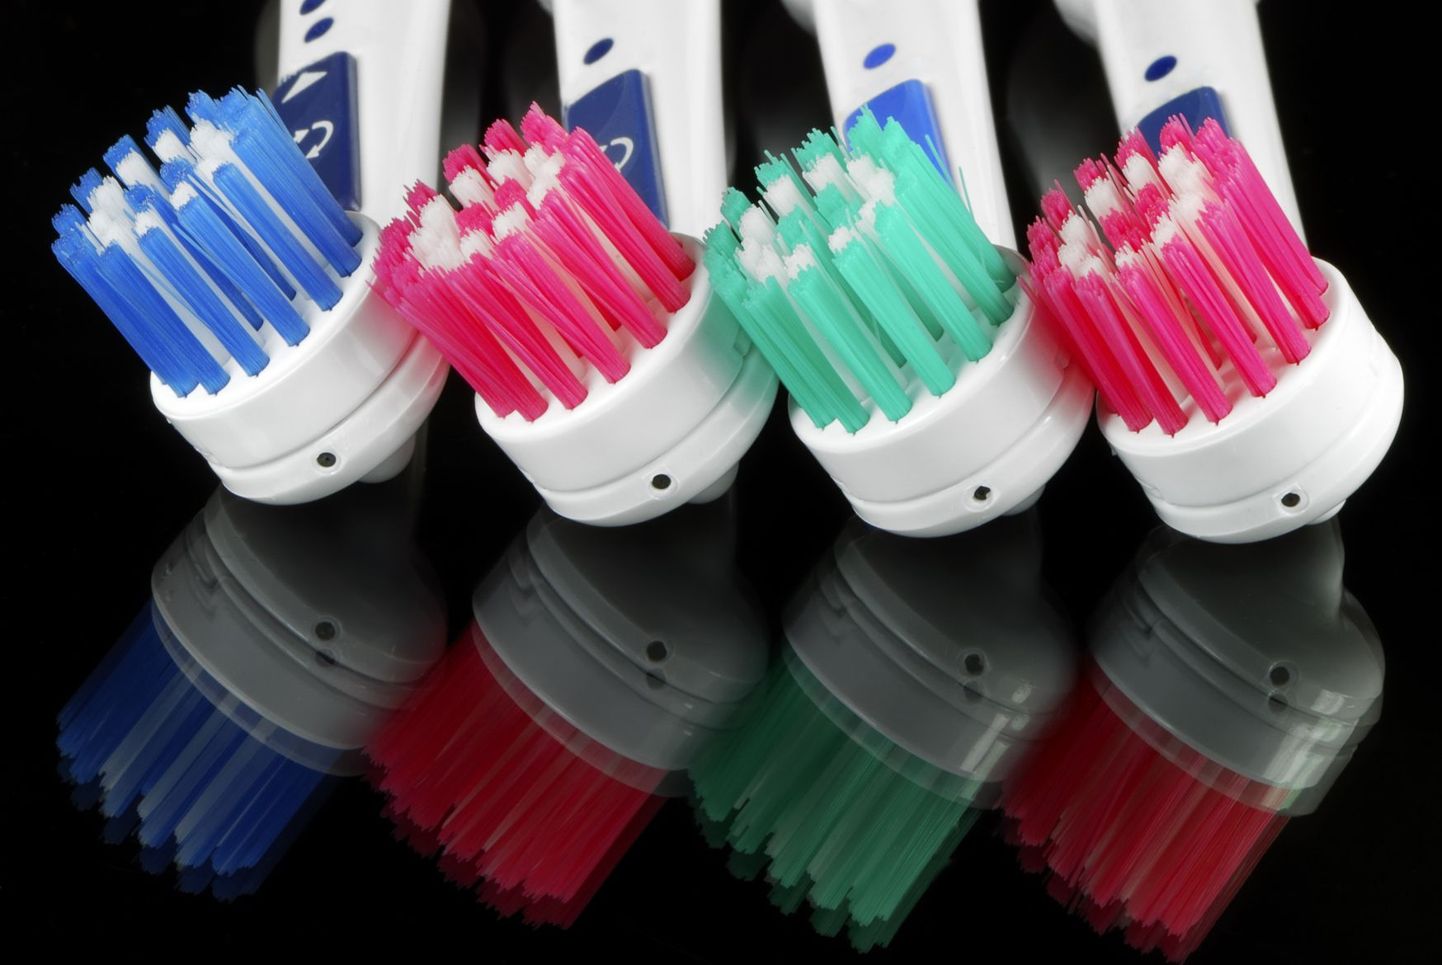 Elektriline hambahari puhastab hambad kergema vaevaga.